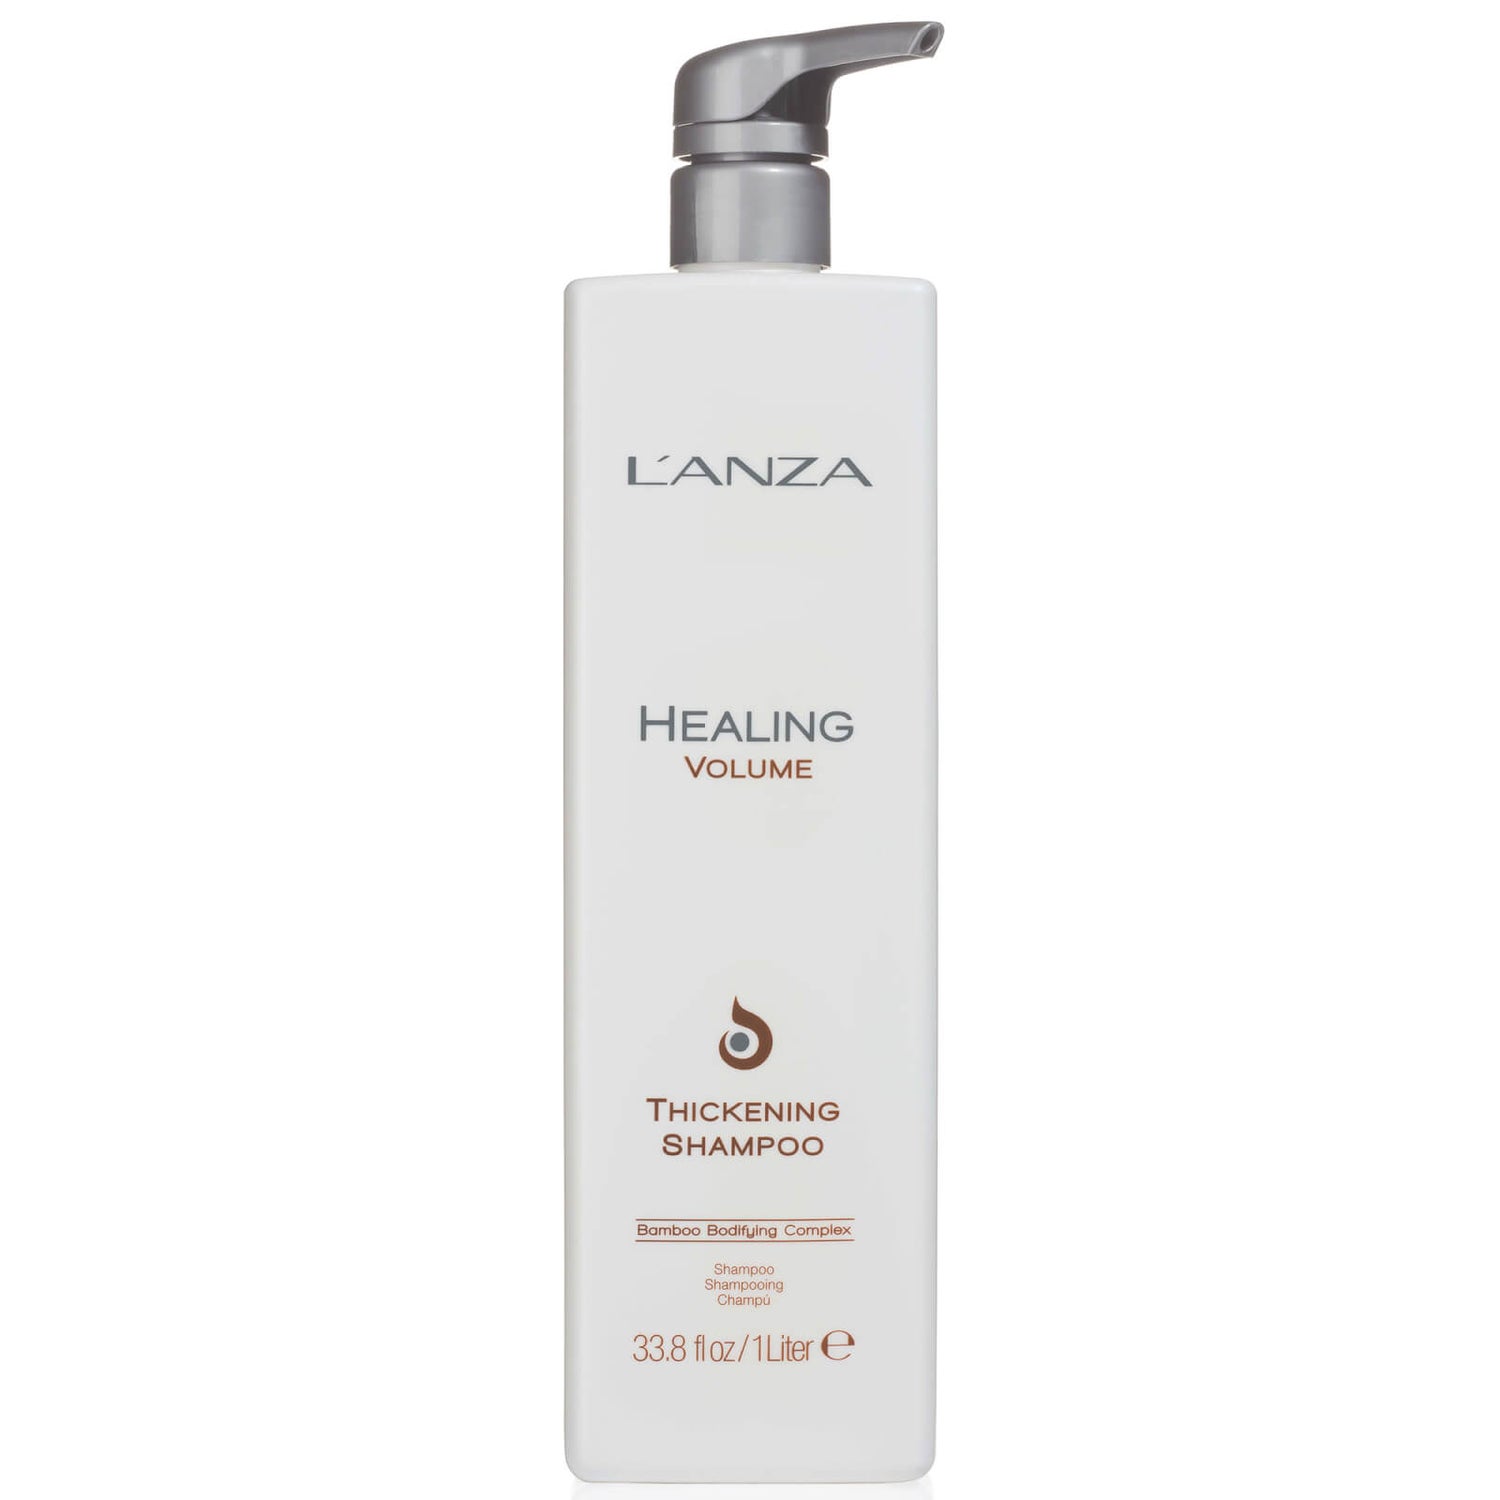 LAnza Healing Volume Thickening Shampoo (1000ml) - （价值 84.00 英镑）